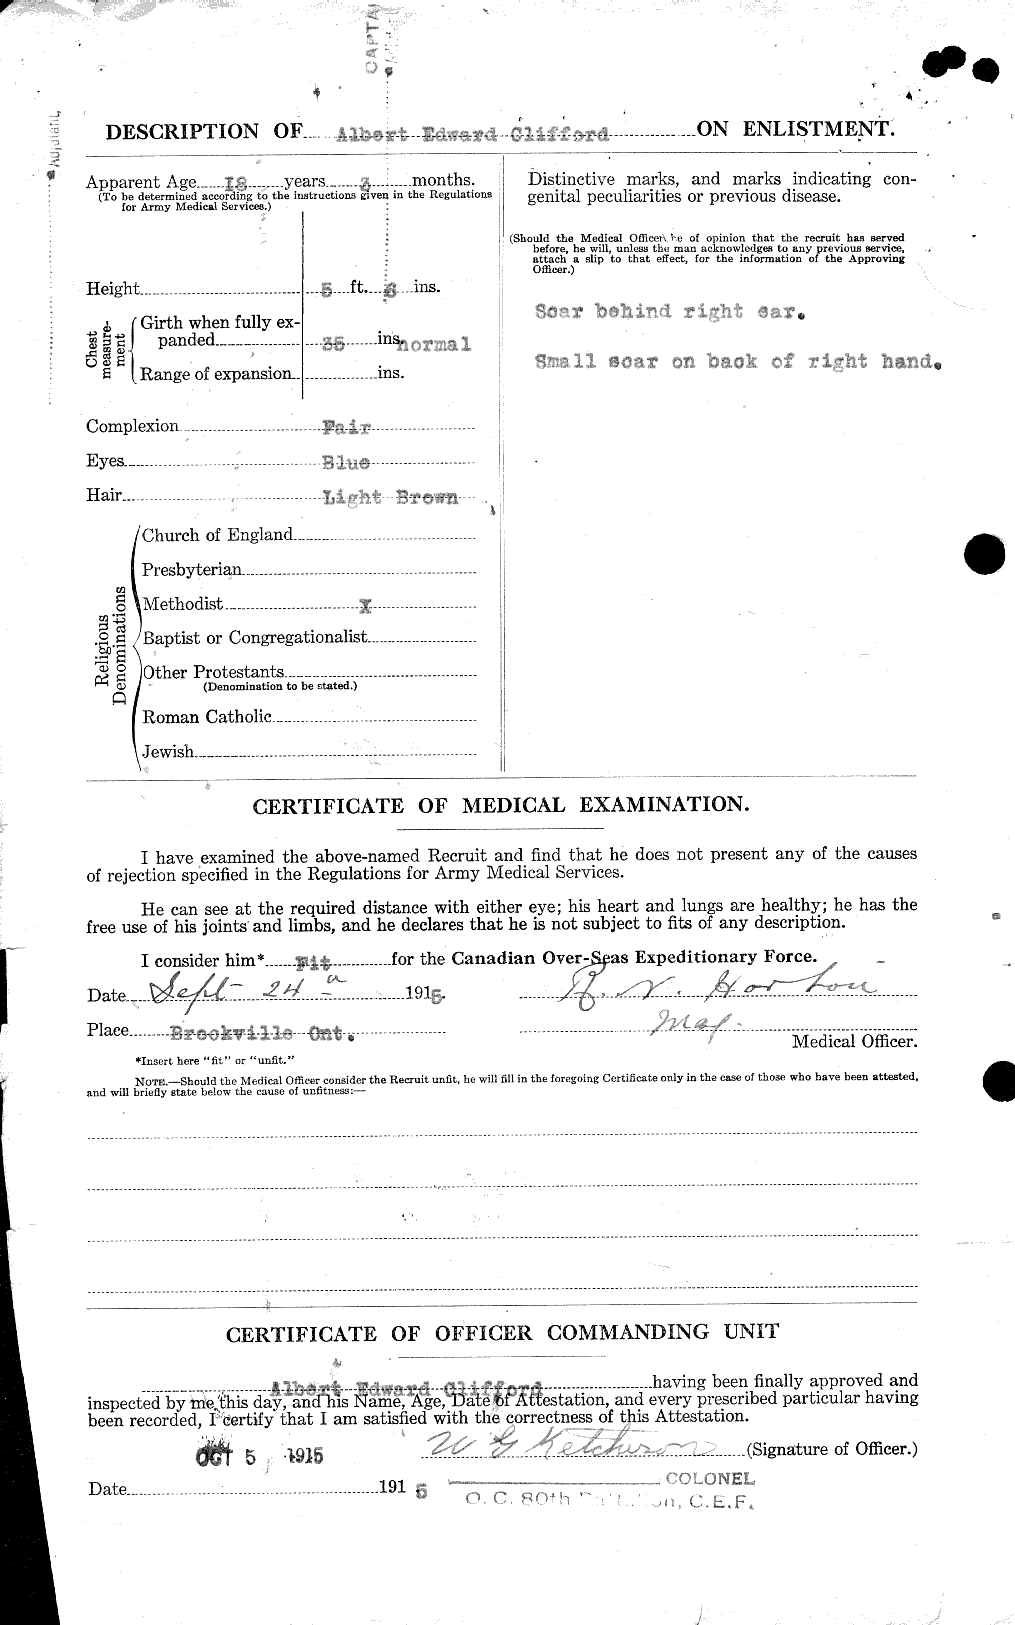 Dossiers du Personnel de la Première Guerre mondiale - CEC 024133b